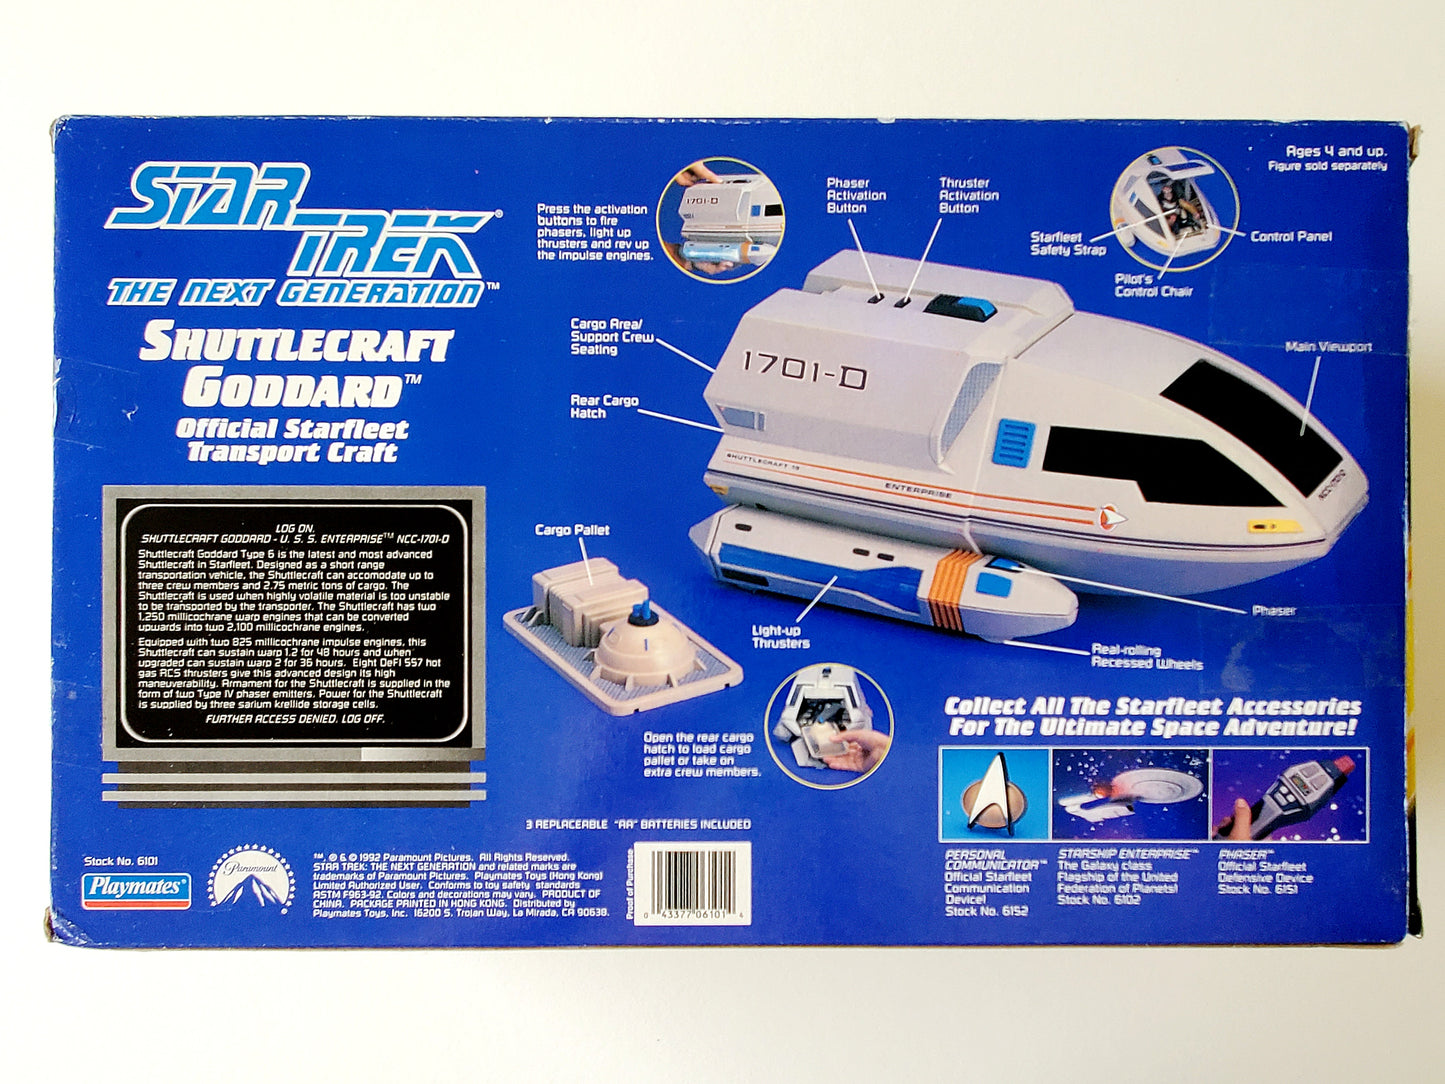 Star Trek: The Next Generation Shuttlecraft Goddard Action Figure Vehicle